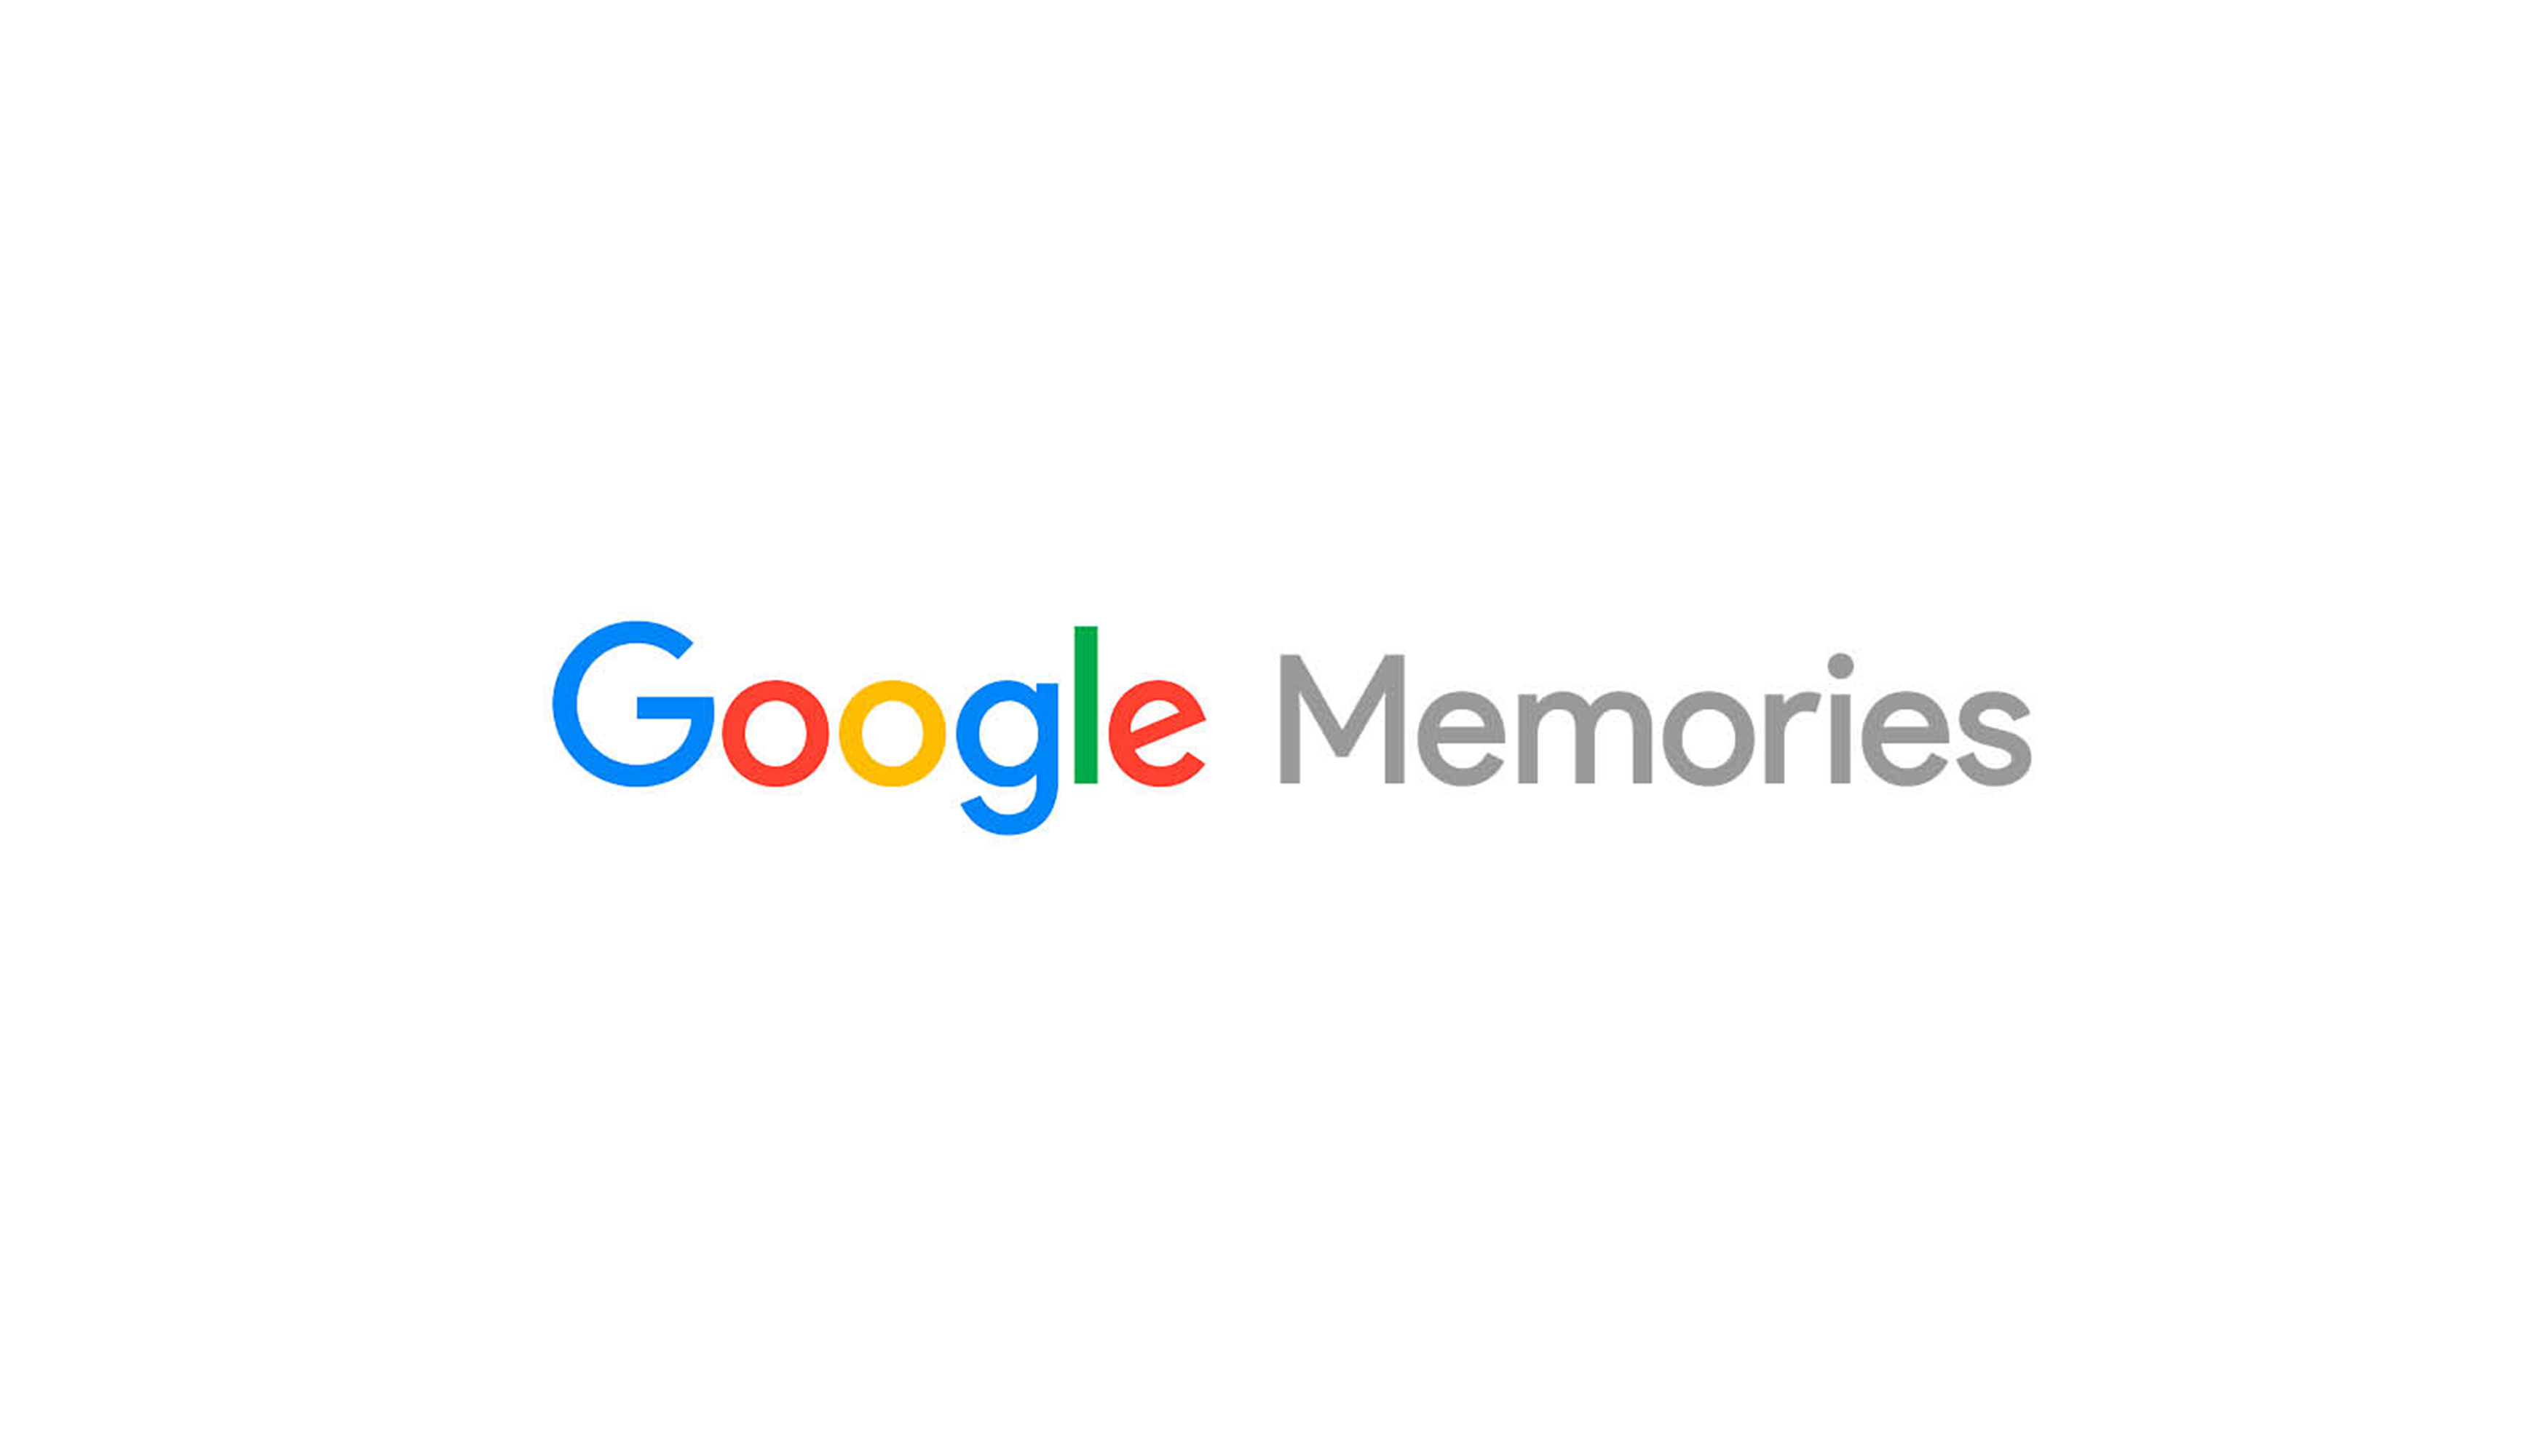 Google memories